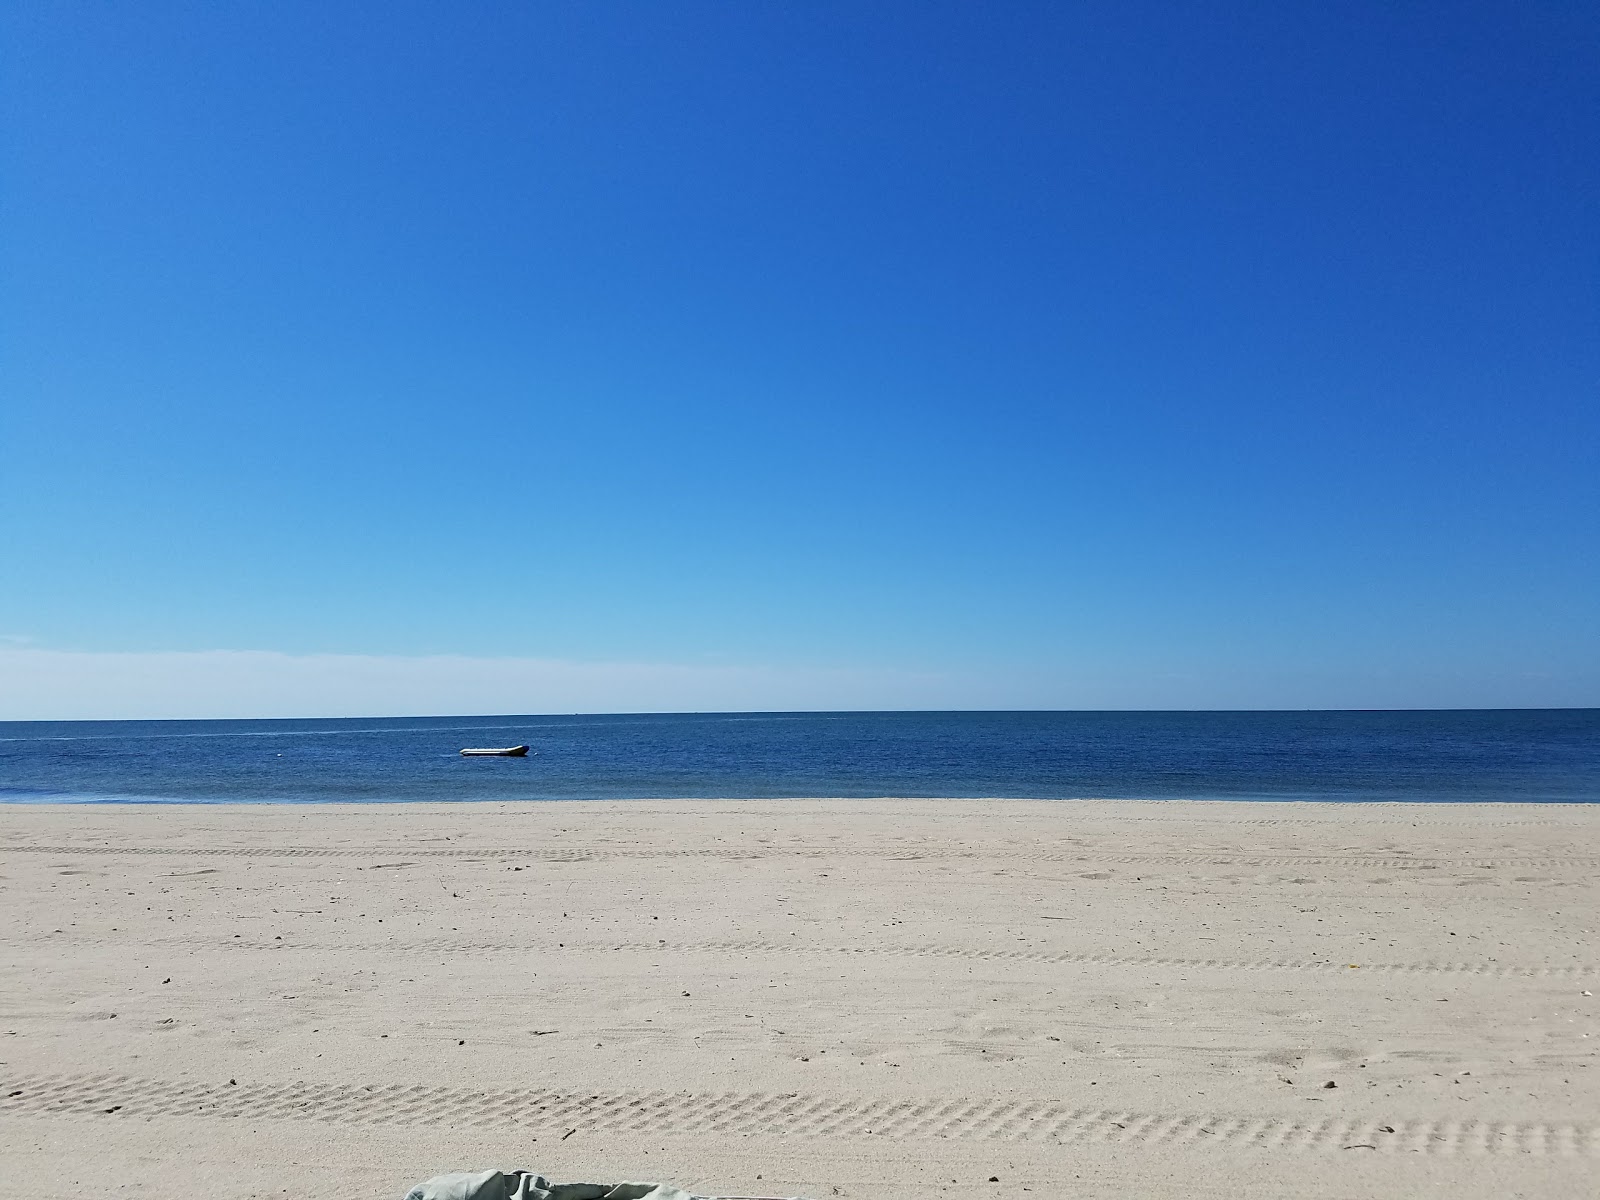 Zdjęcie South Village Beach z powierzchnią jasny piasek